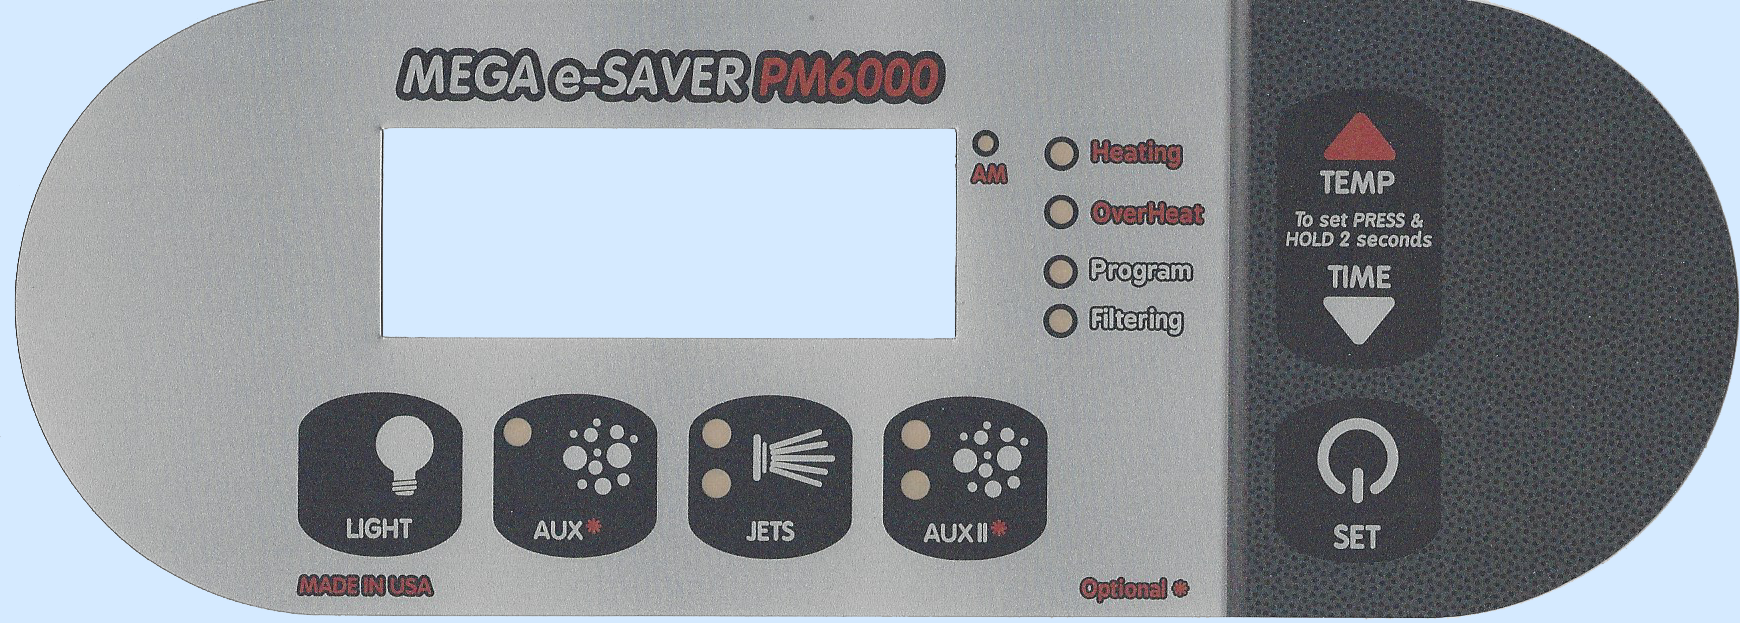 PM6000 Digital Spa Side Control